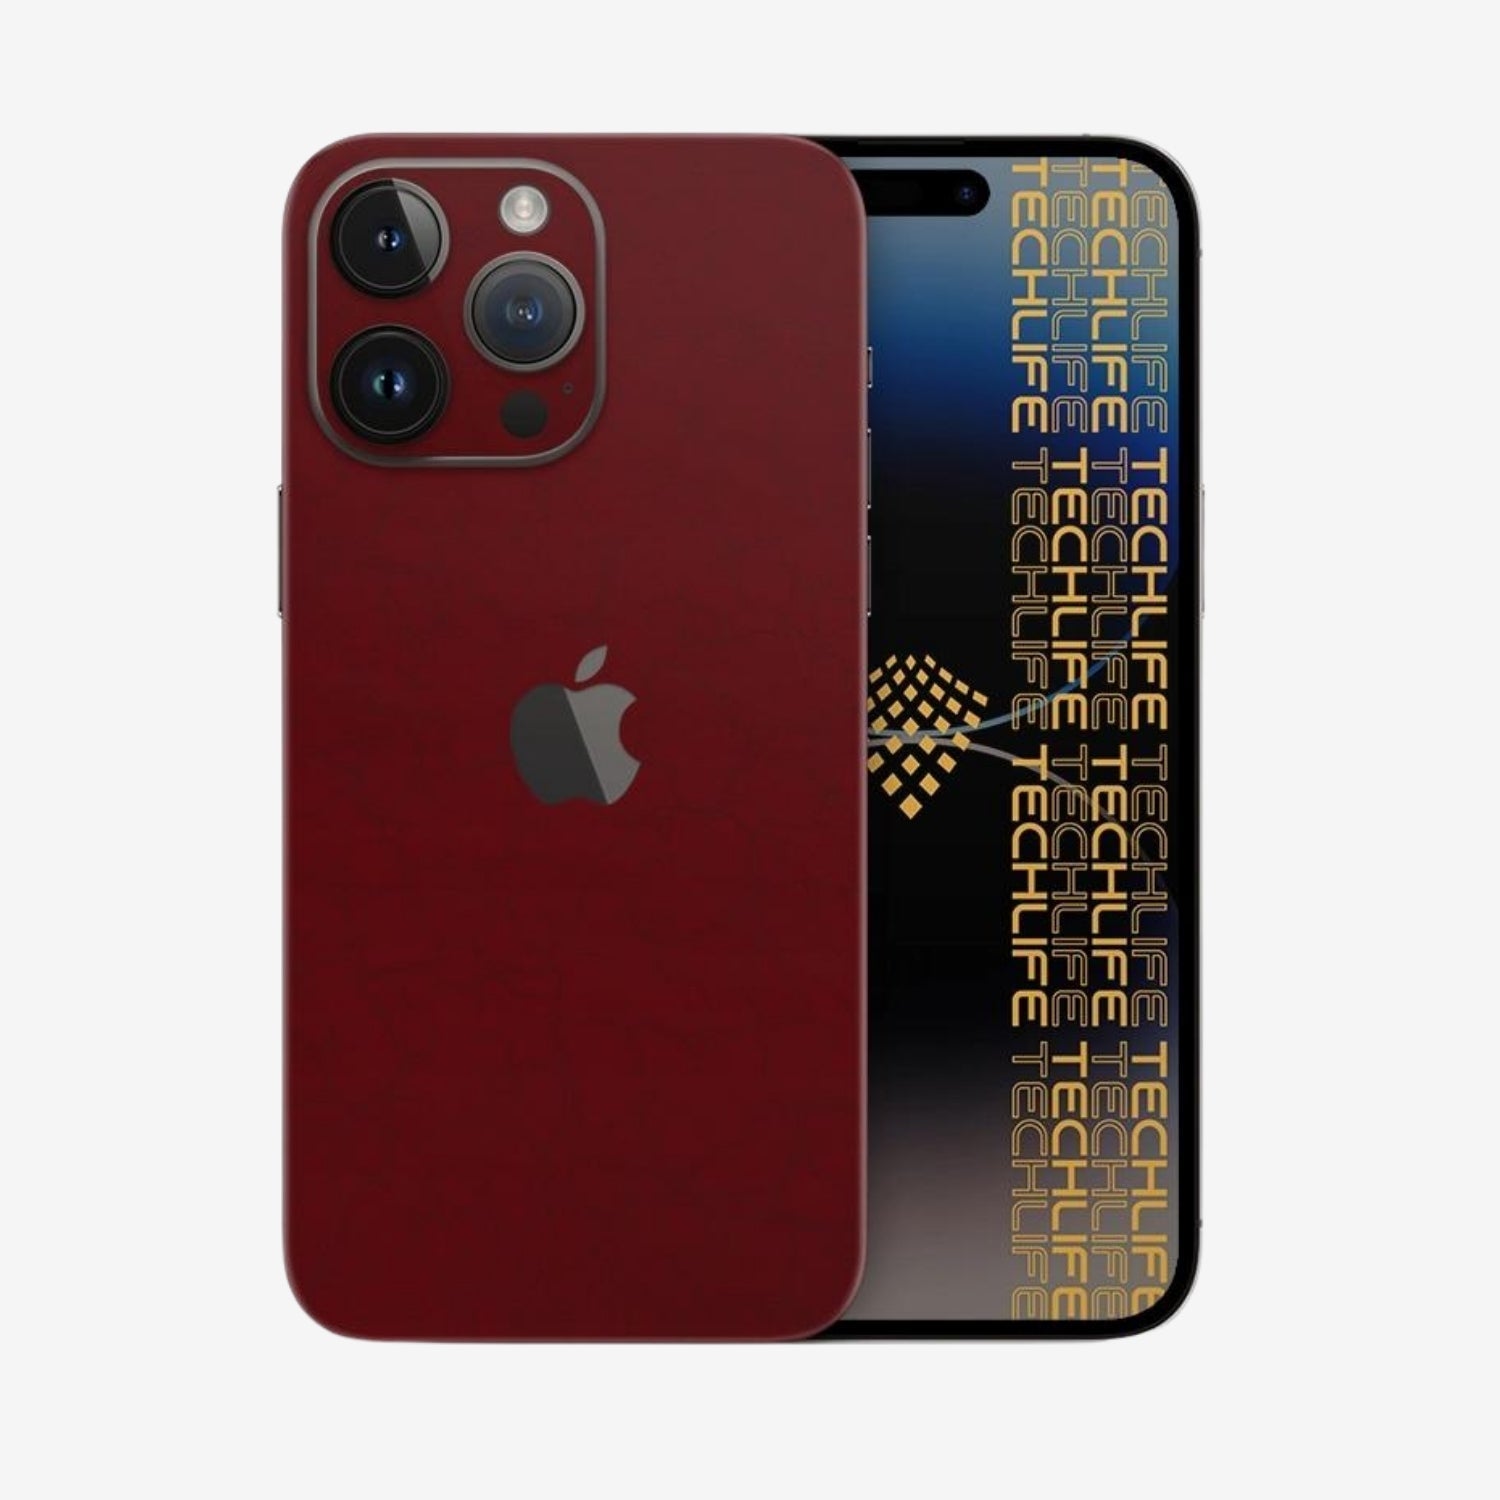 Skin Premium Venom Ultimate Red Edition iPhone 12 Pro Max